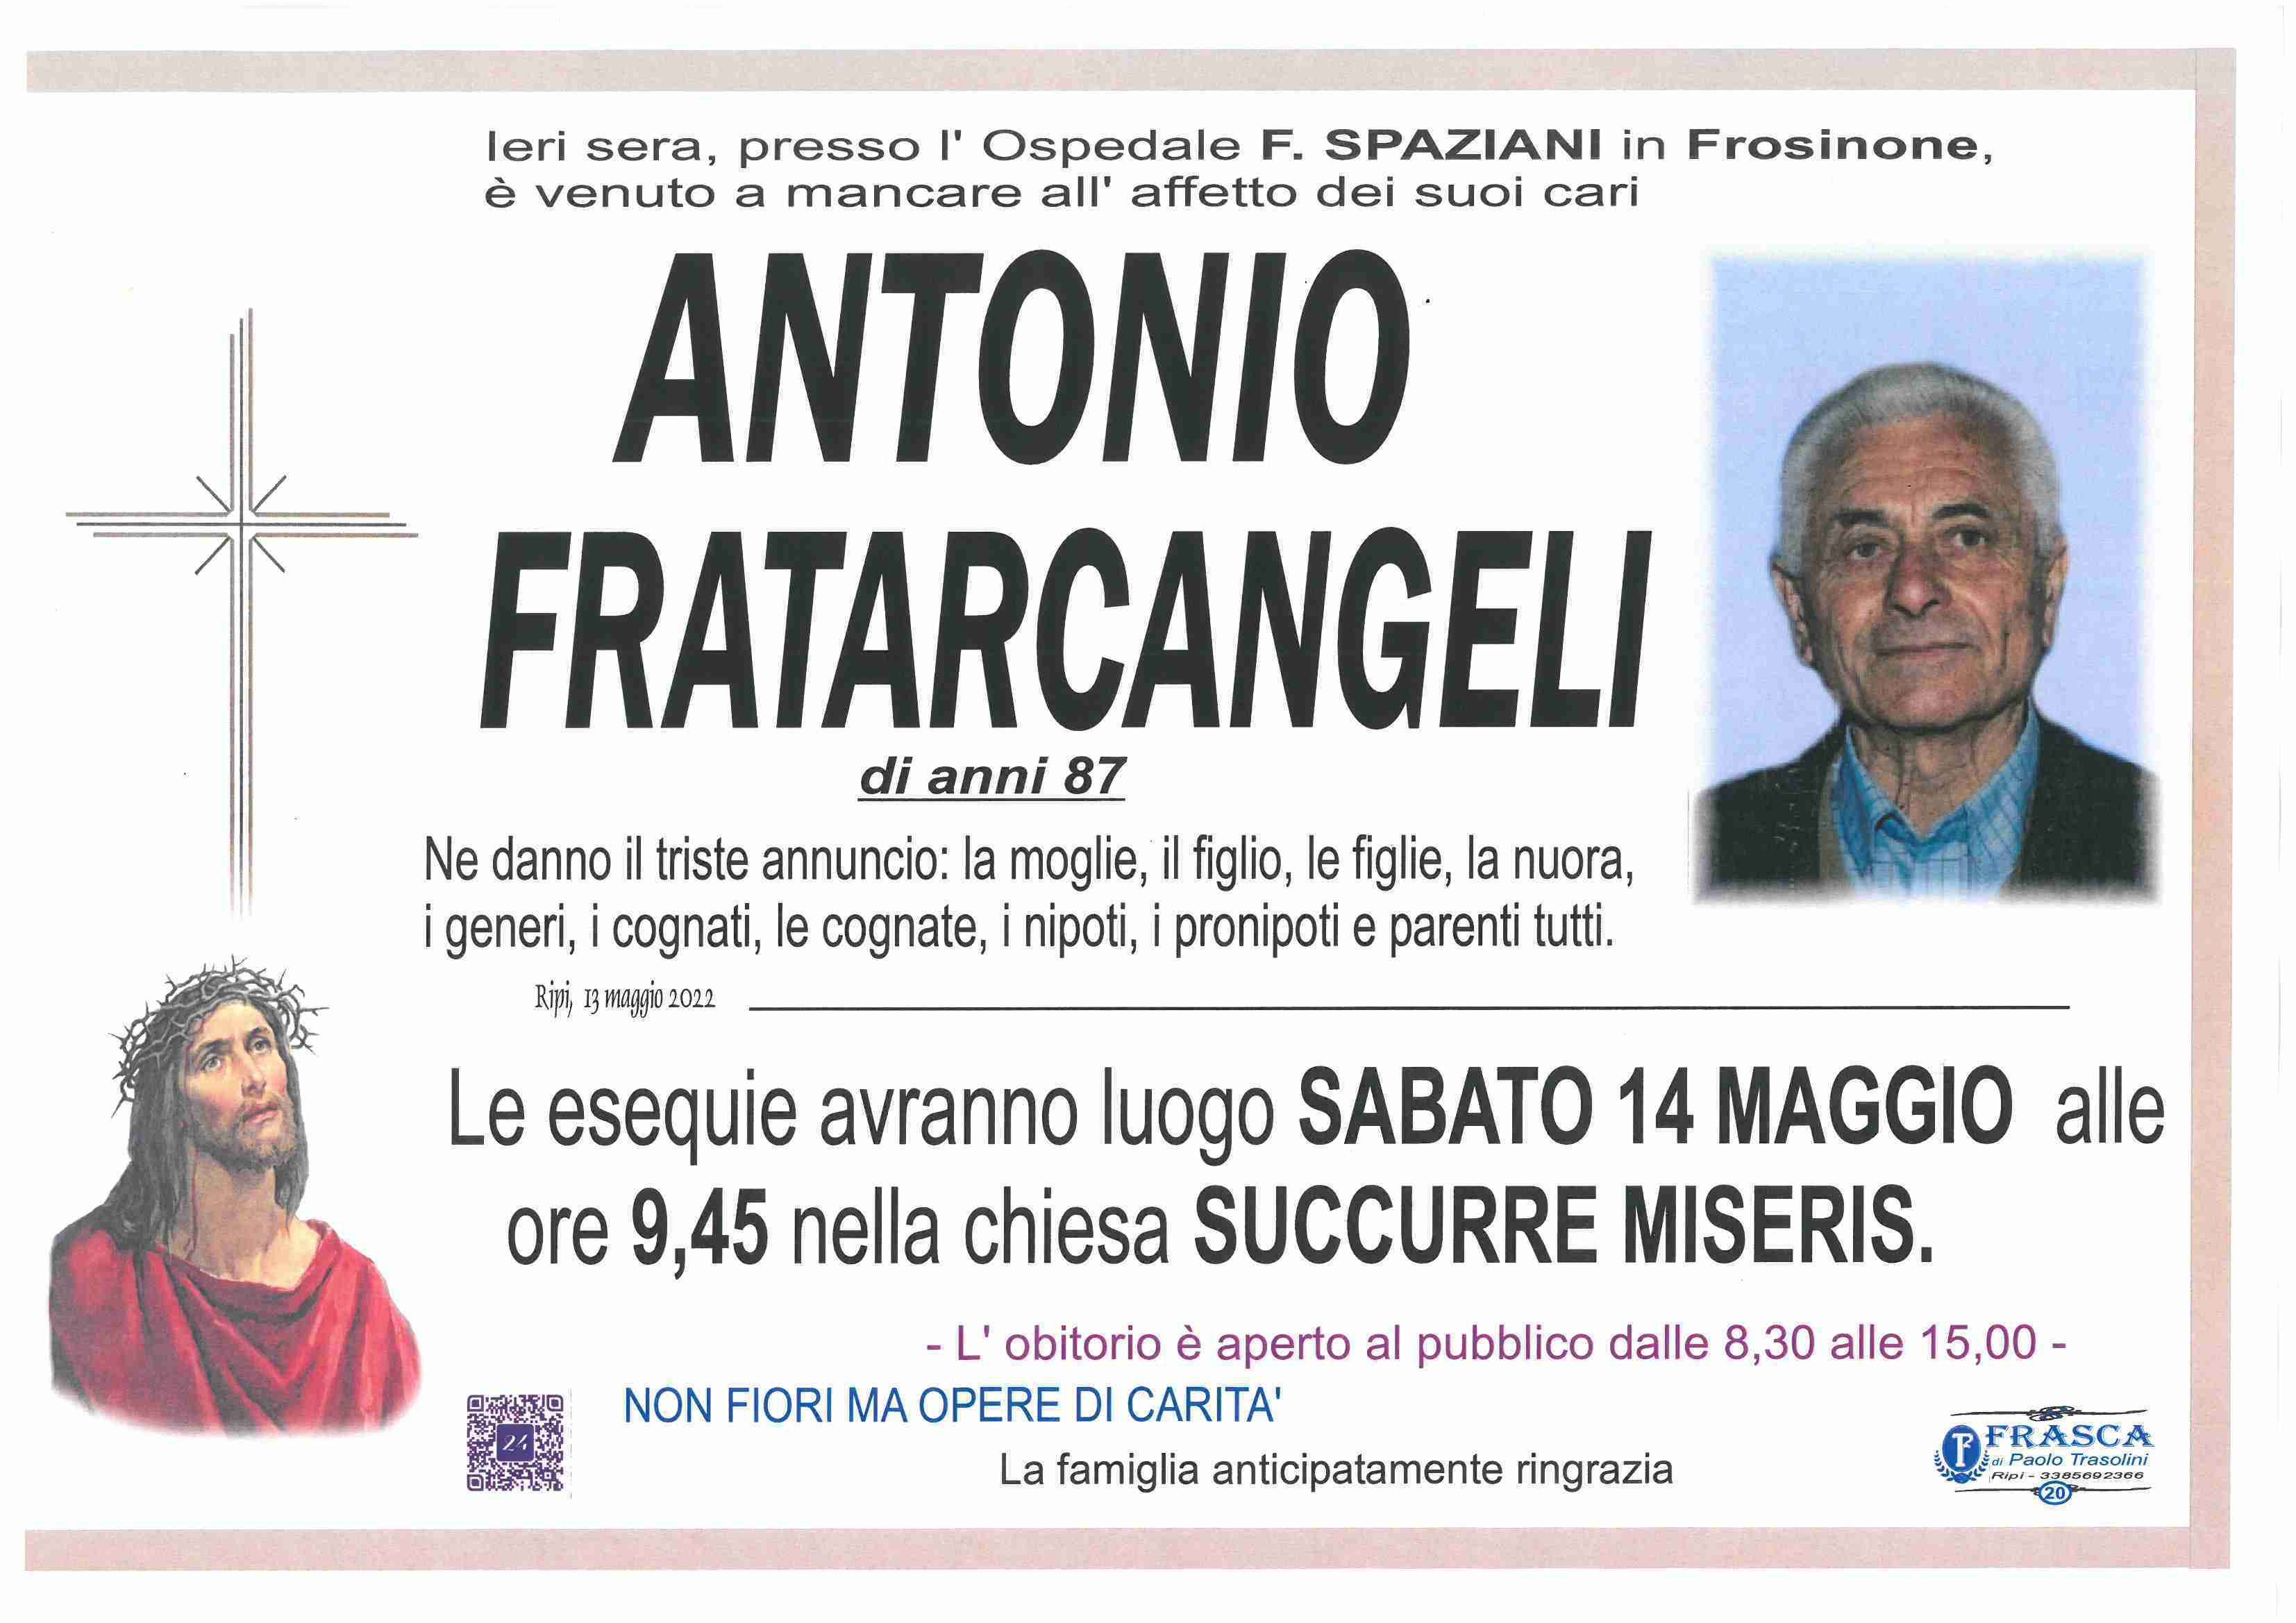 Antonio Fratarcangeli